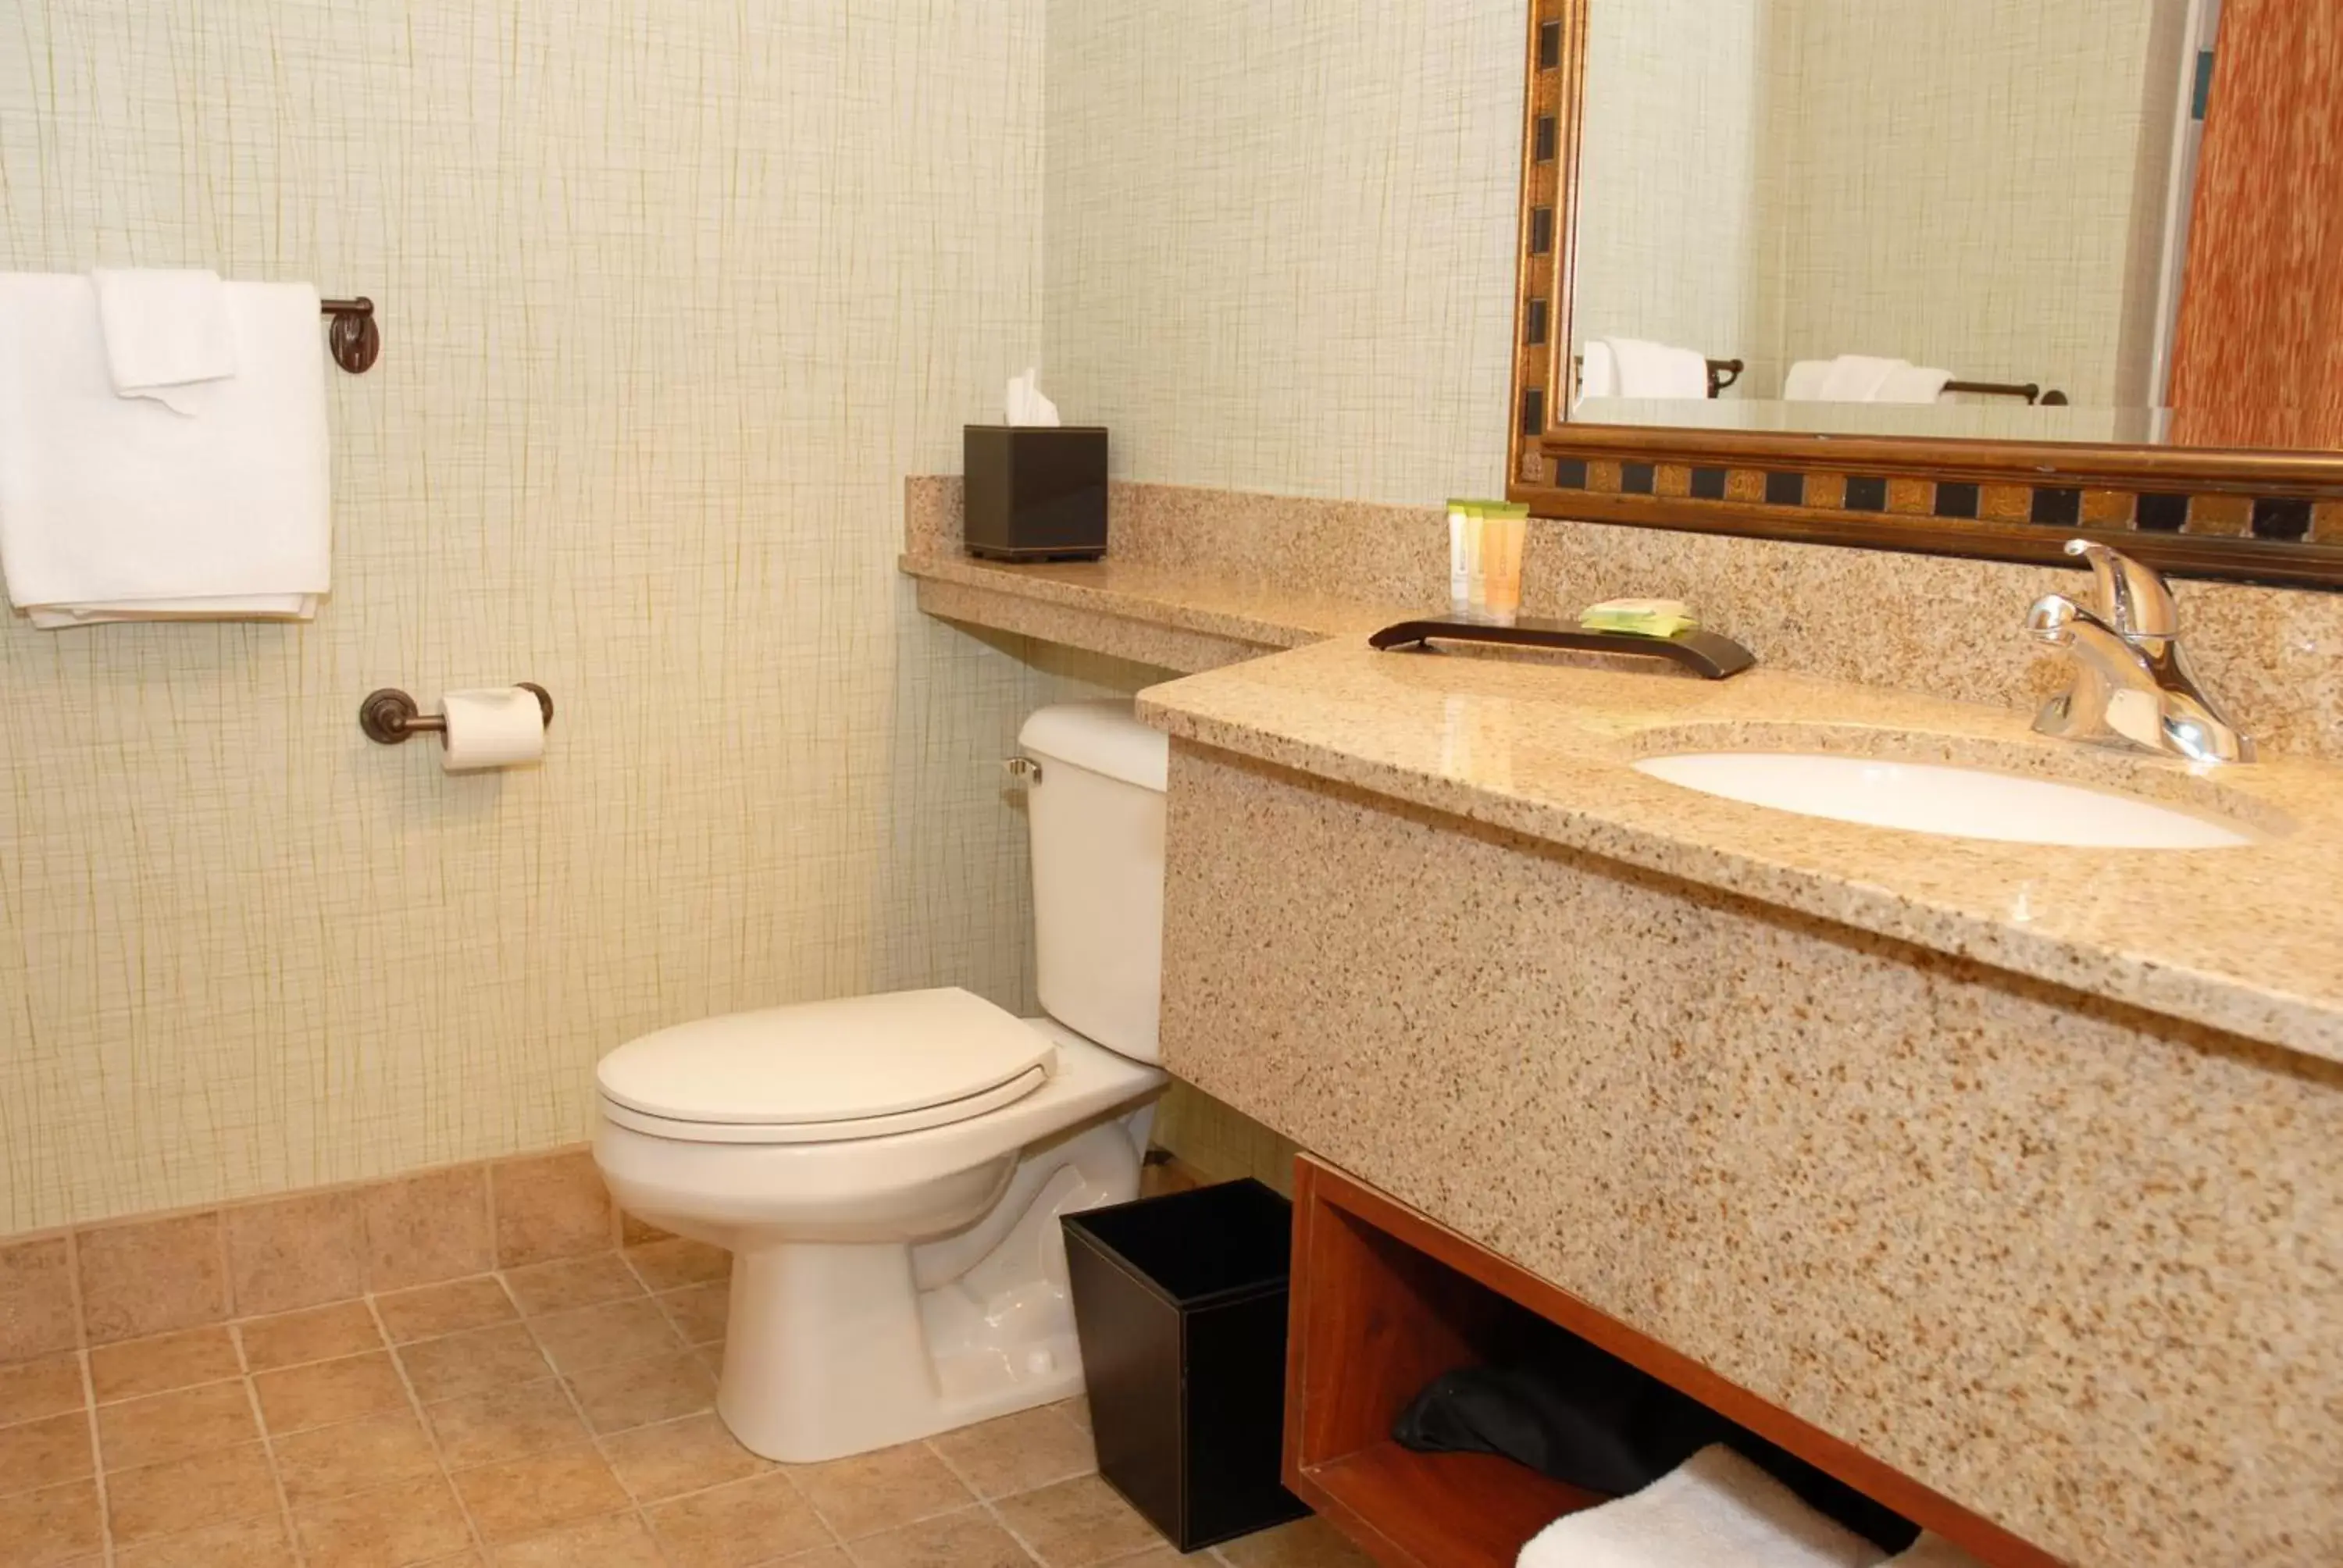 Bathroom in Sugar Beach Resort Hotel